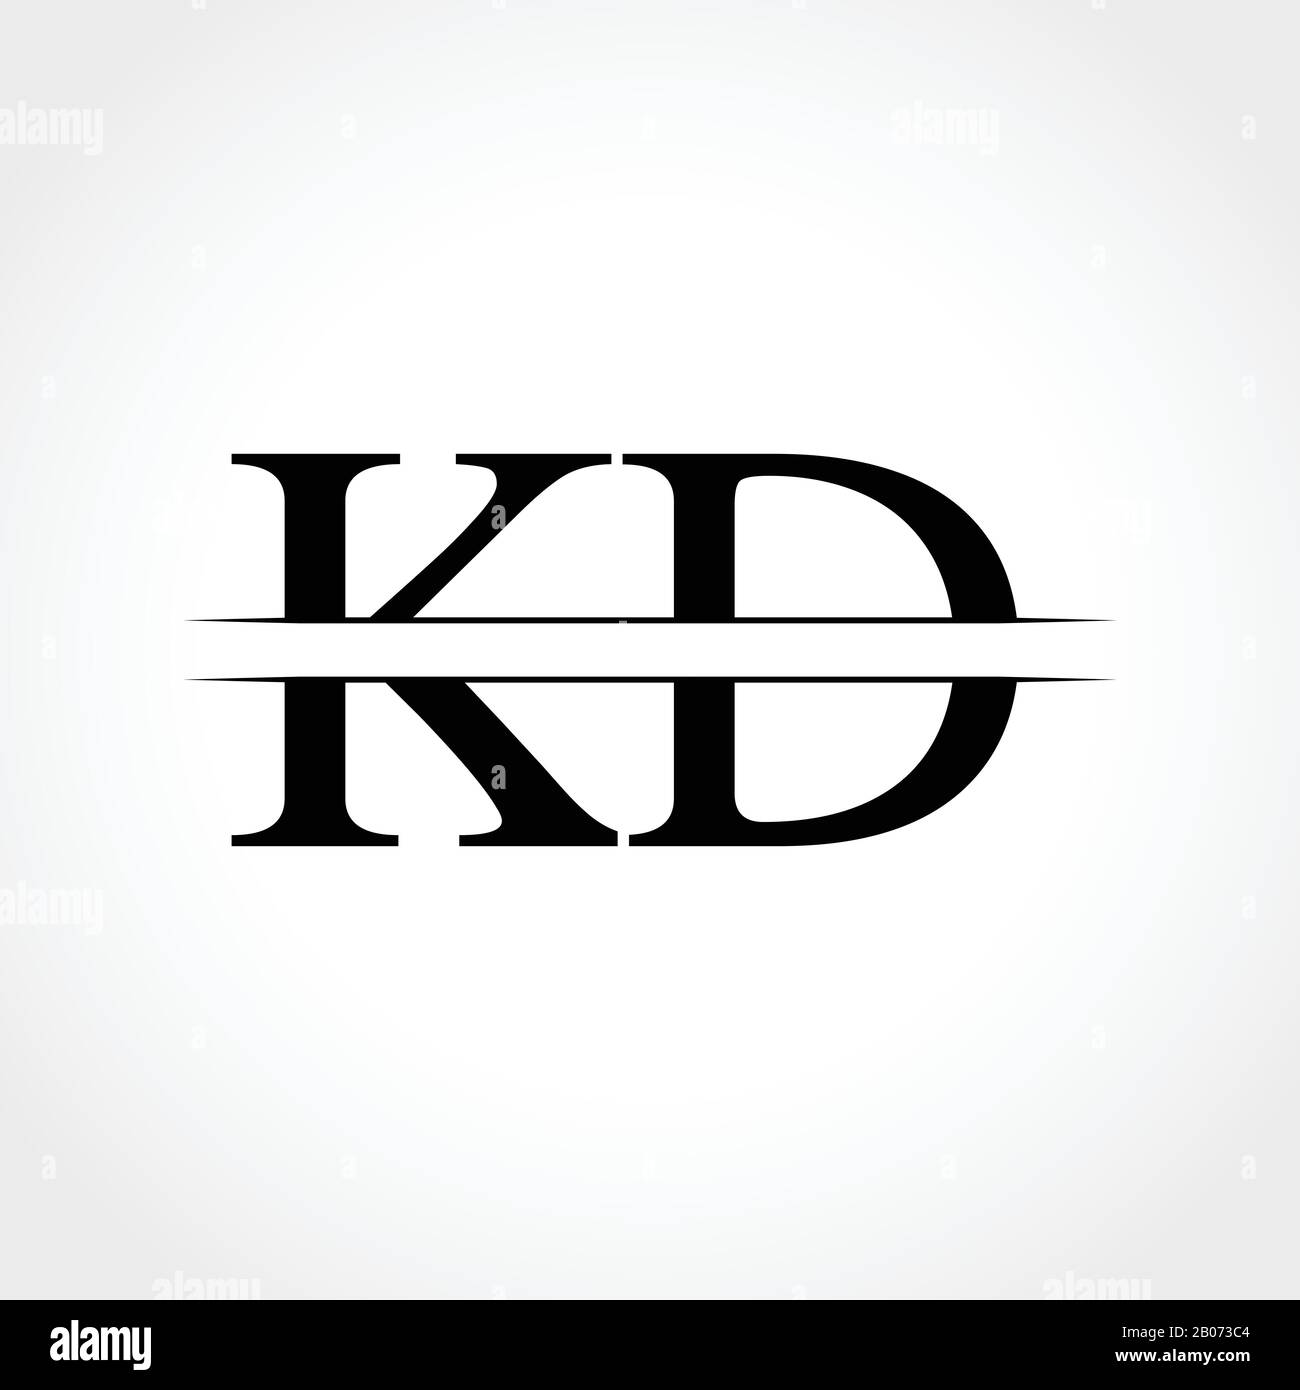 Những kiến thức khi thiết kế kd logo đồng bộ và chuyên nghiệp